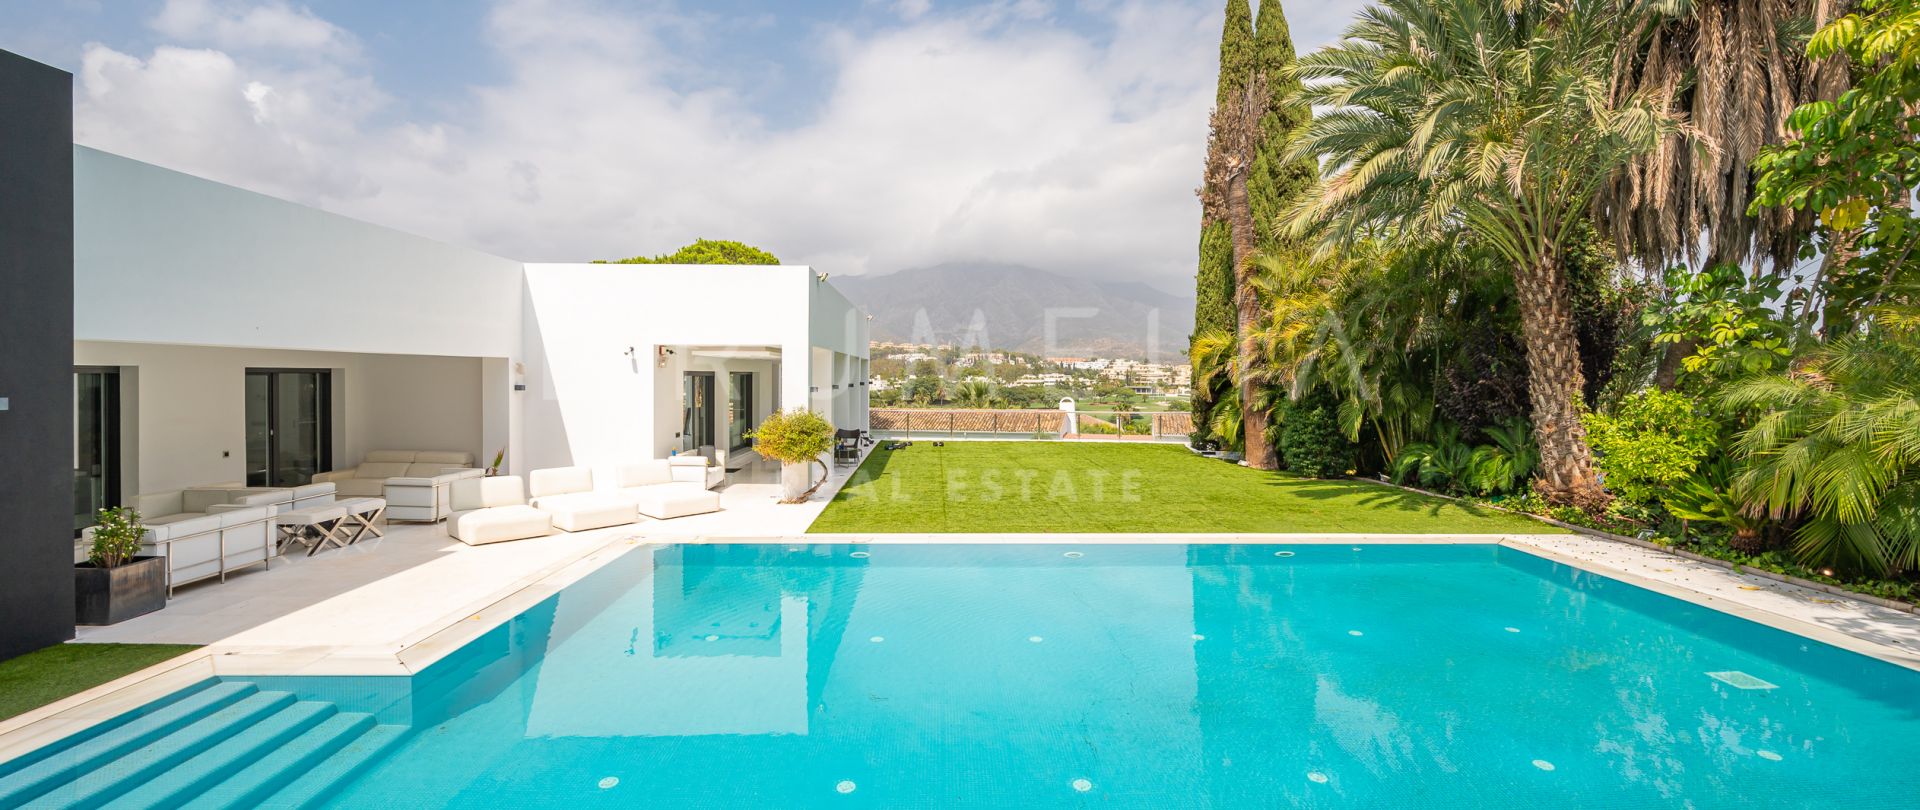 Exquisite Contemporary High-end Villa in Las Brisas, Nueva Andalucía